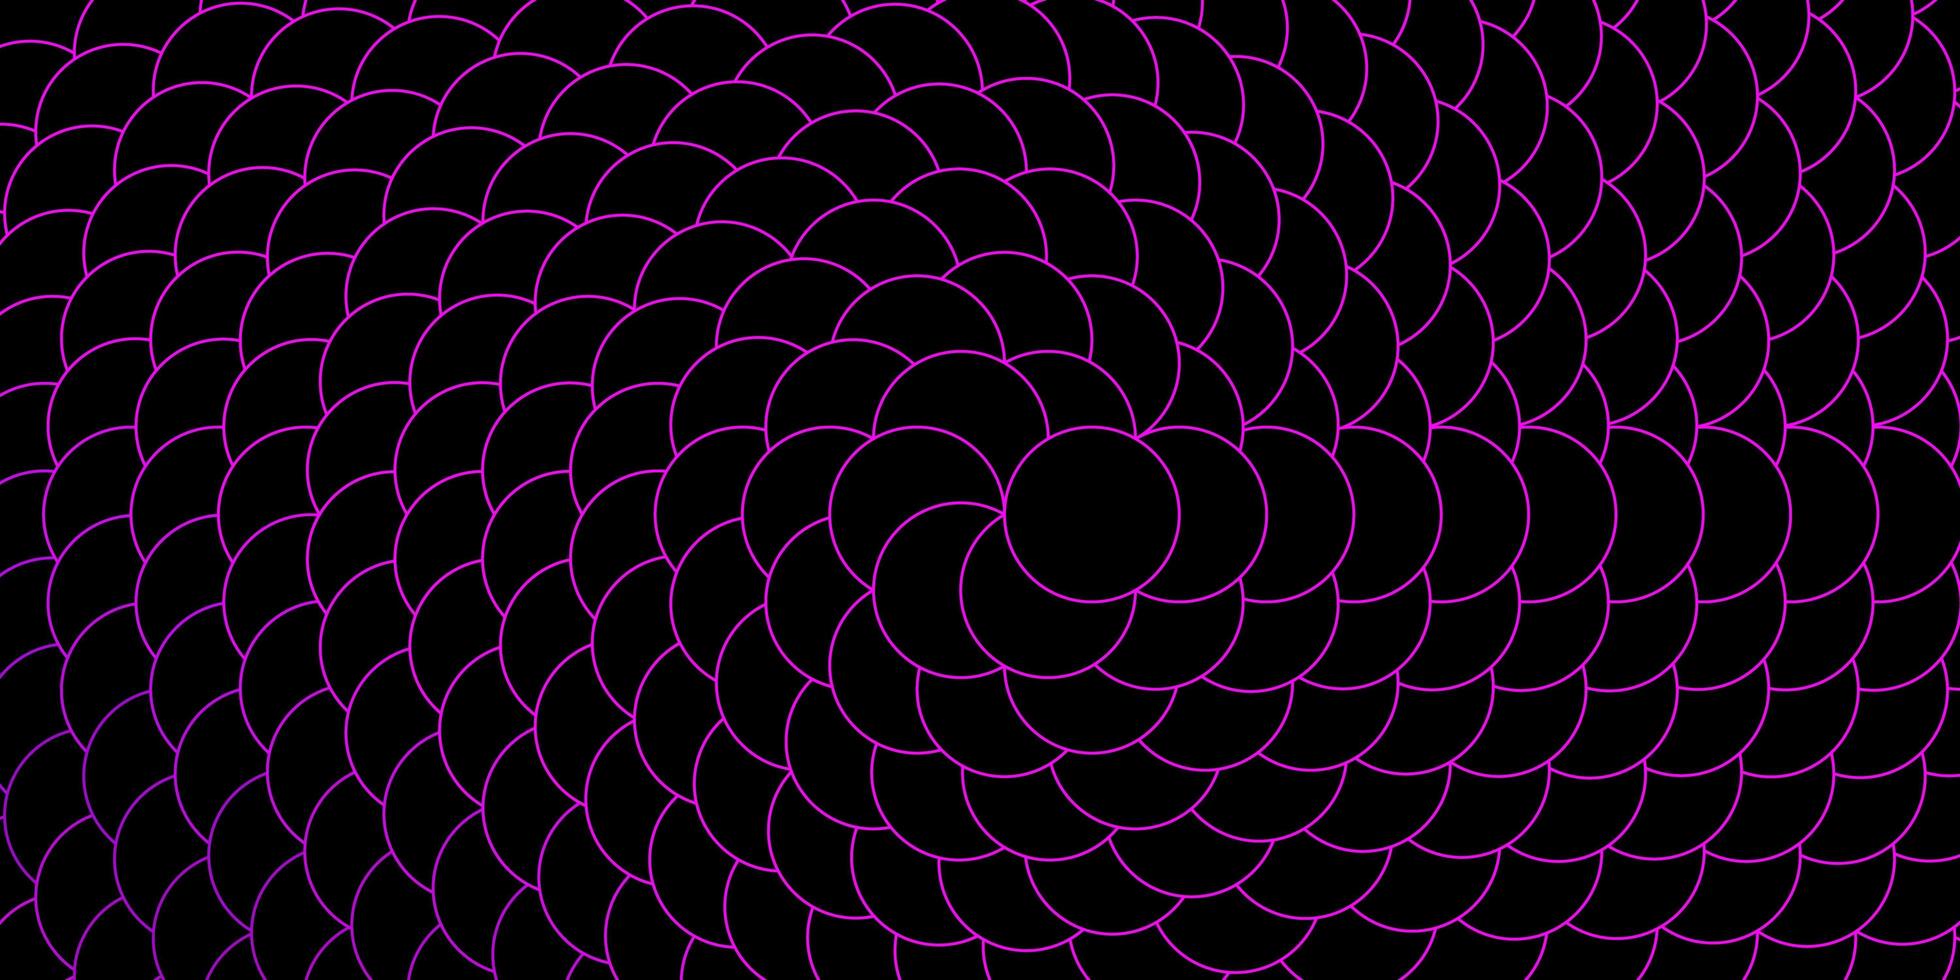 patrón de vector de color rosa oscuro con círculos. Ilustración con un conjunto de esferas abstractas de colores brillantes. diseño de carteles, pancartas.